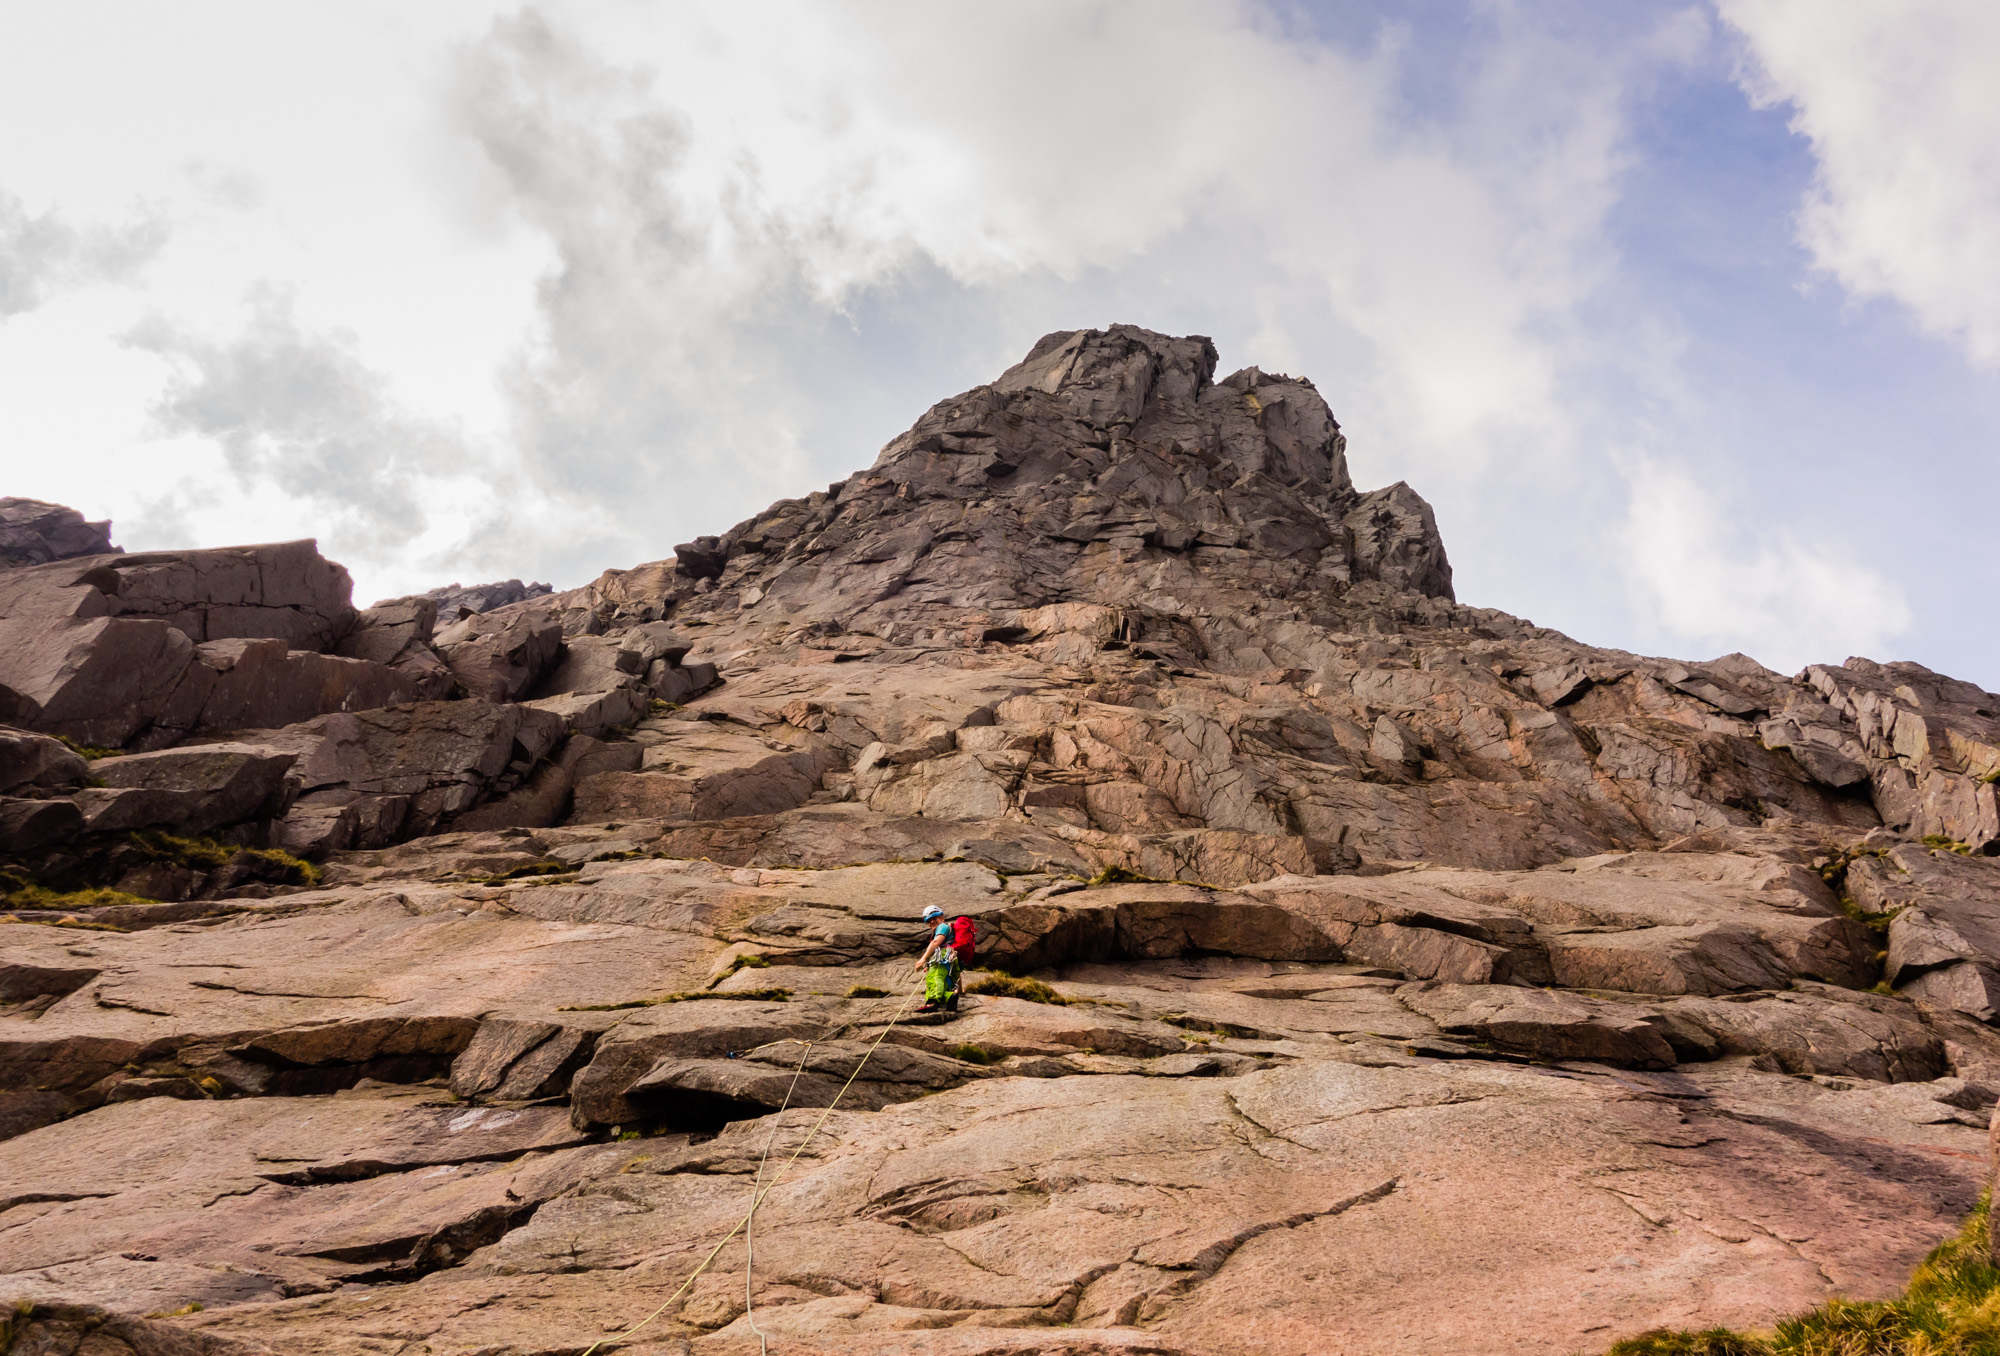 scottish summer rock climbing on the needle shelterstone crag